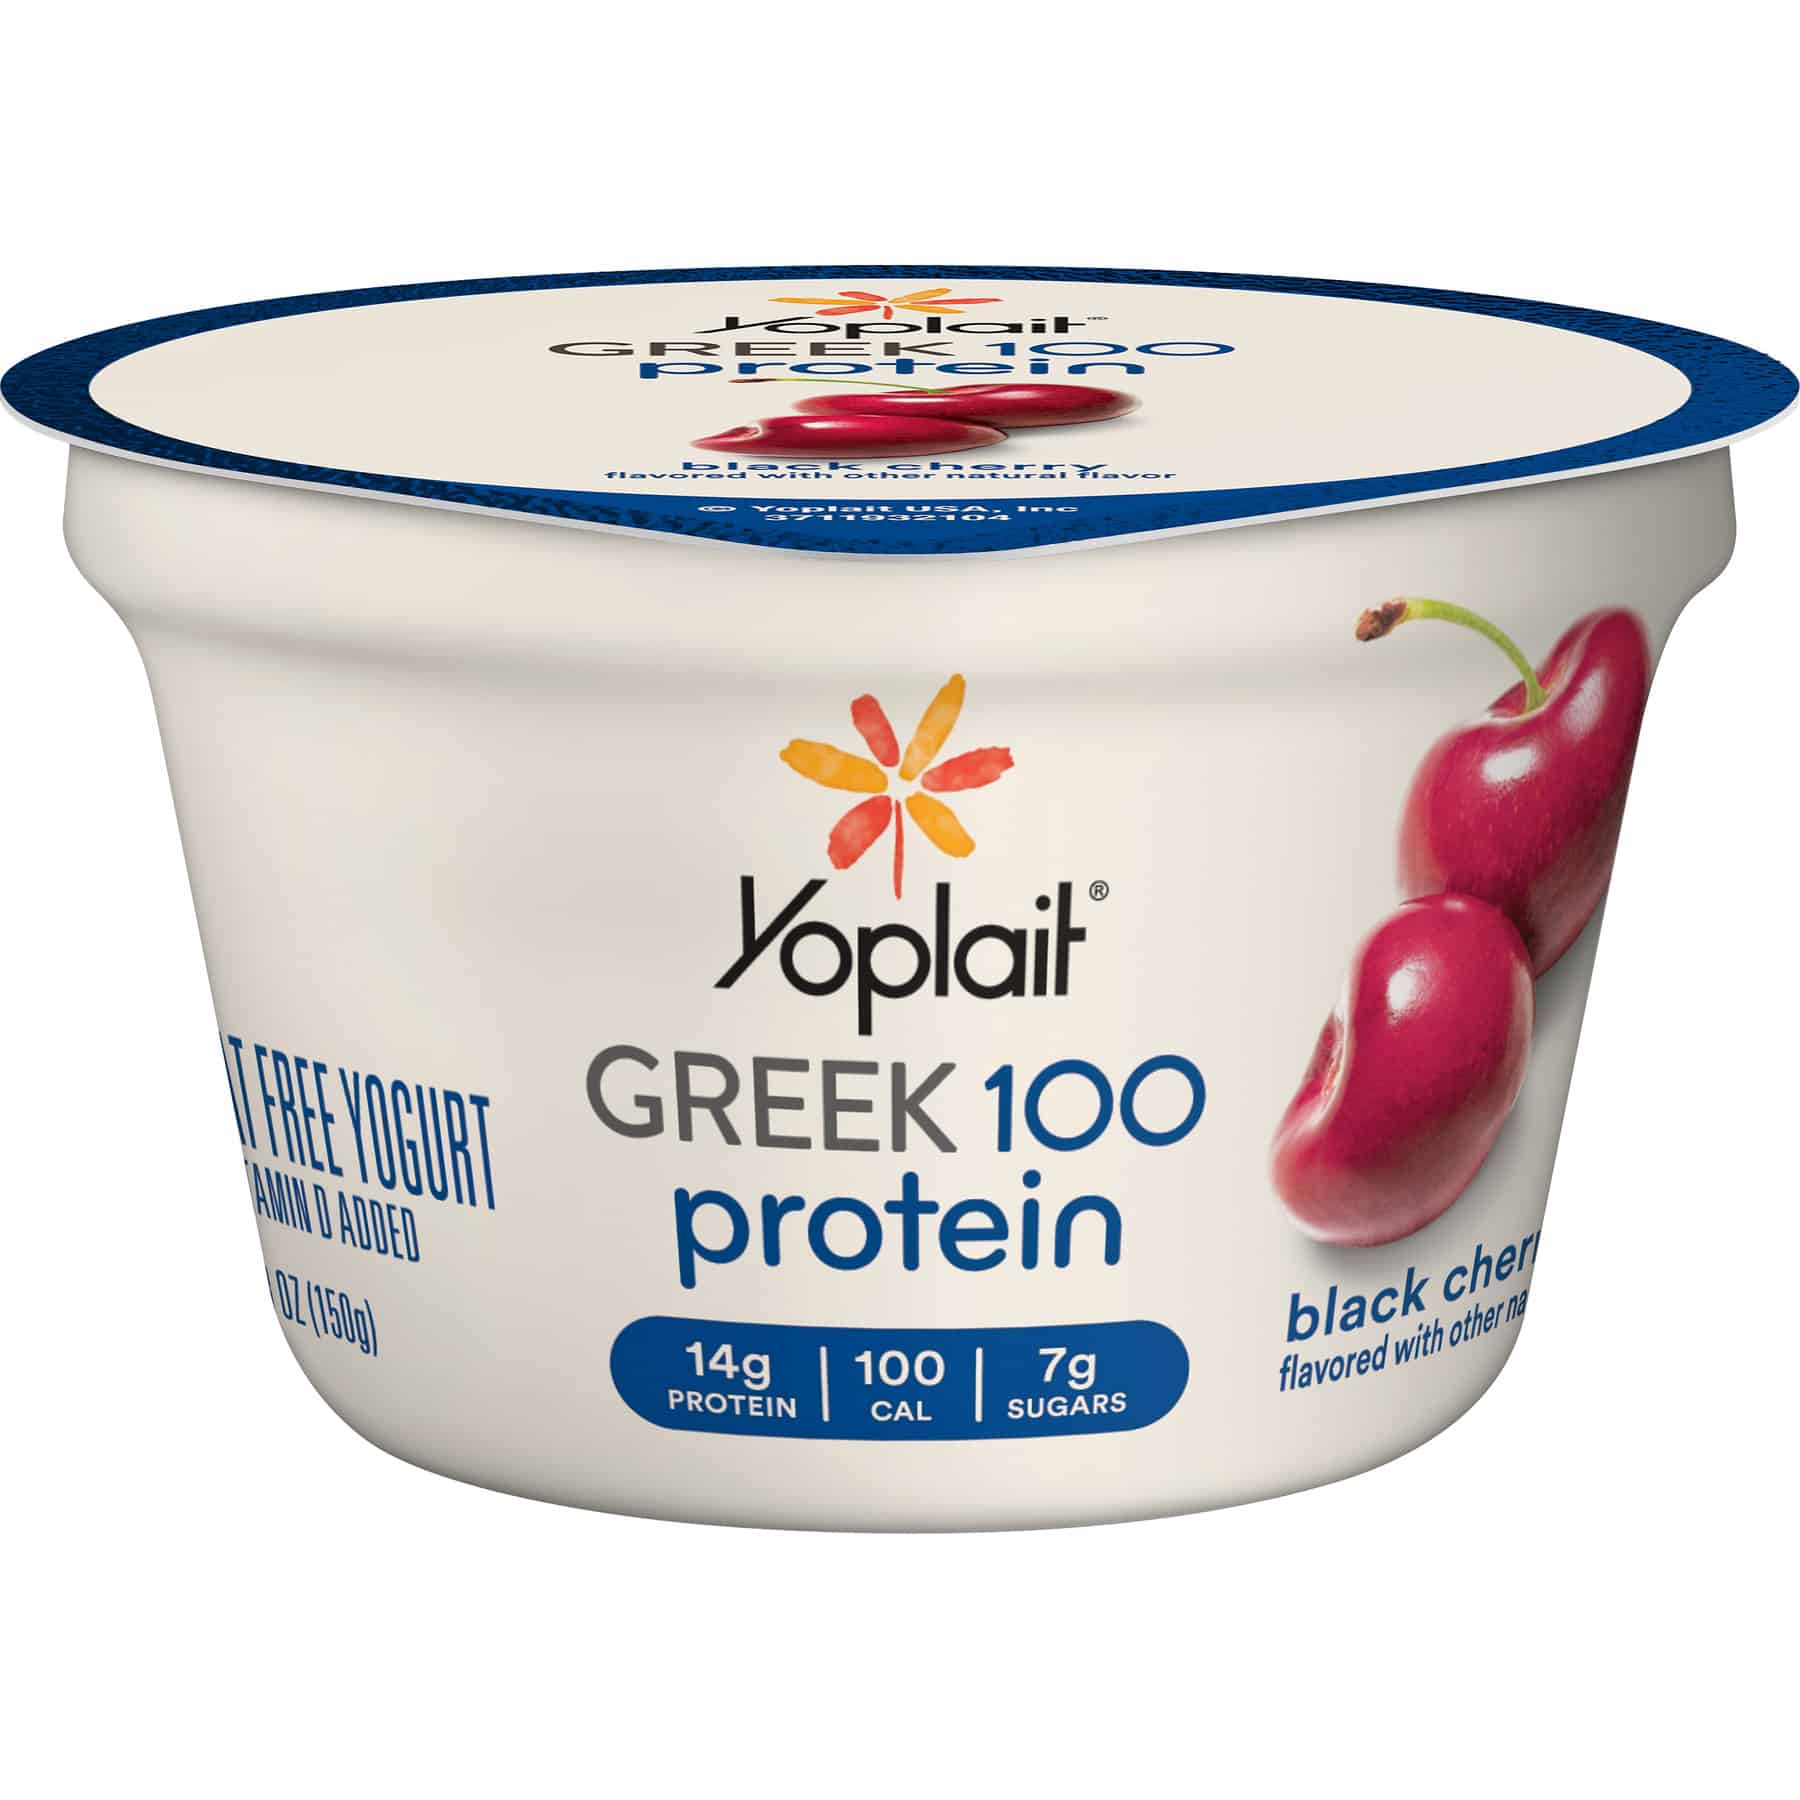 Yoplait Greek 100 Protein Black Cherry Fat